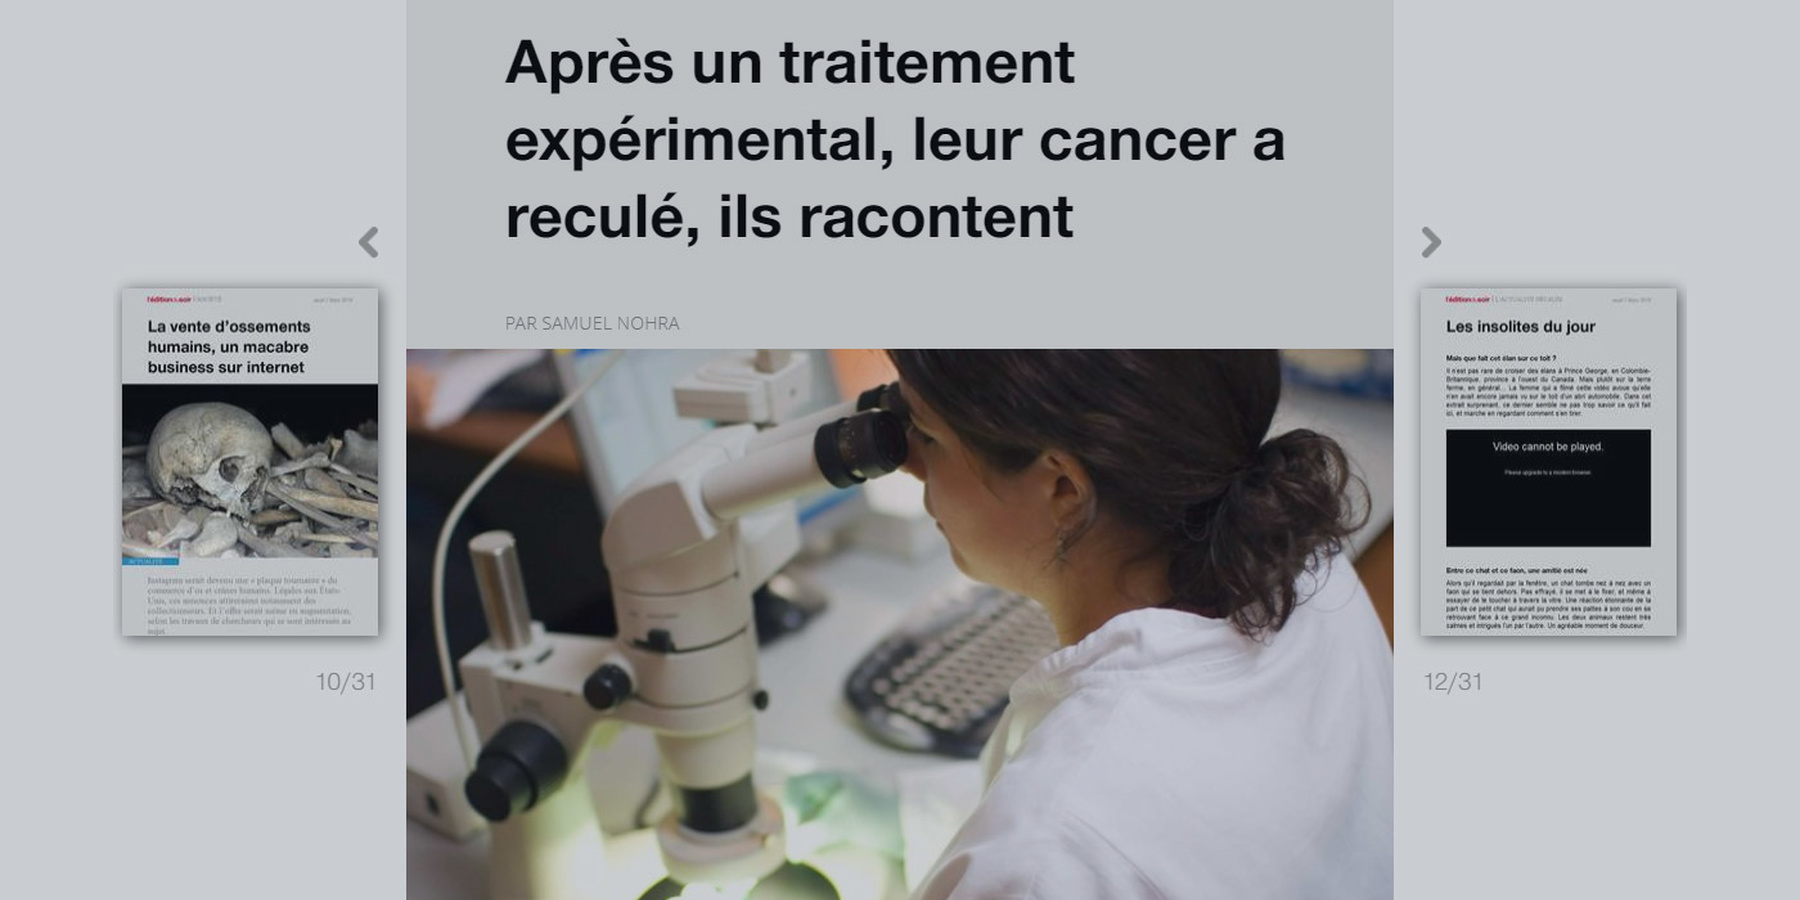 CHU de Rennes : ils racontent le recul de leur cancer après un traitement expérimental